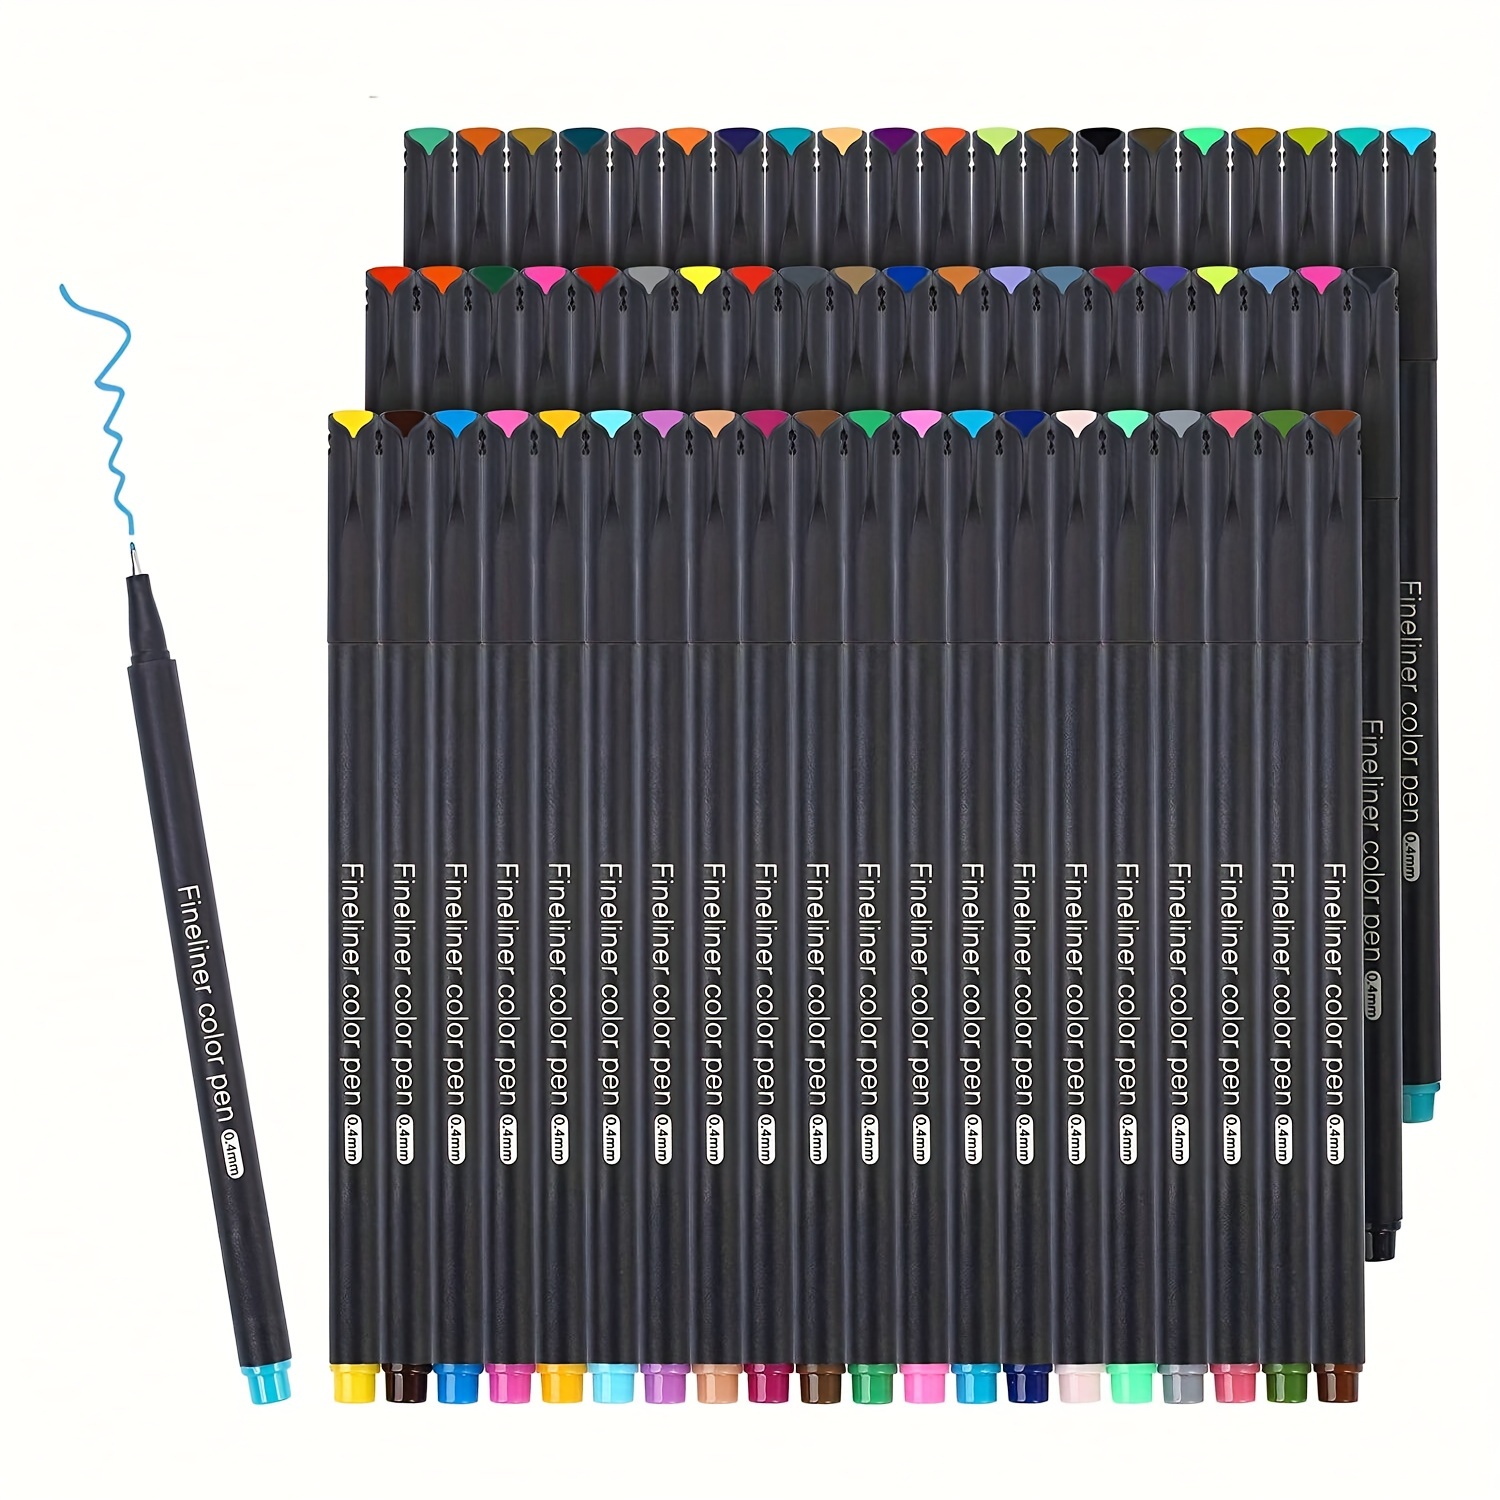 Set of 12 Micro Pens,Art Pens,Fineliner Ink Pens,Technical Drawing  pen,Pigment Pen,Fine Point,Black,Waterproof,for Art Watercolo - AliExpress